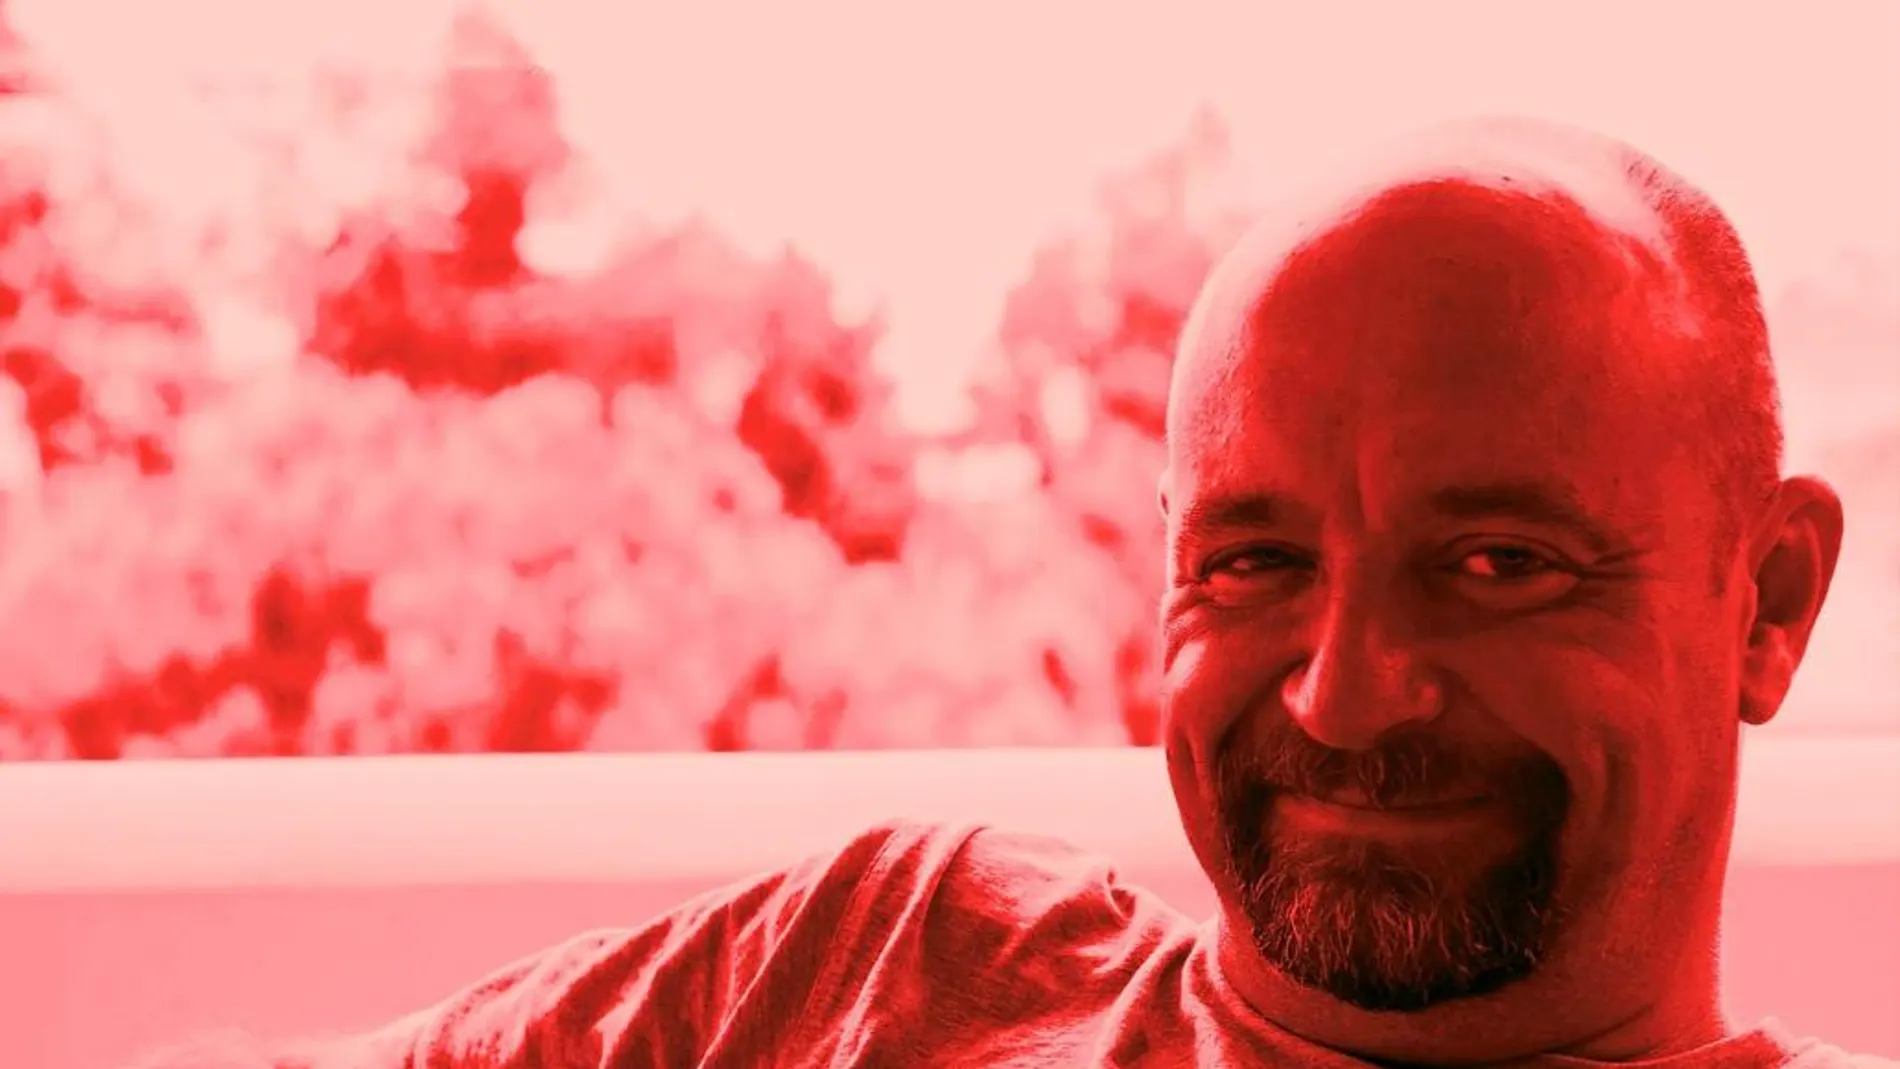 El escritor Carlos Sisí, aquí en rojo sangre, es uno de los escriotres de género más populares de la actualidad